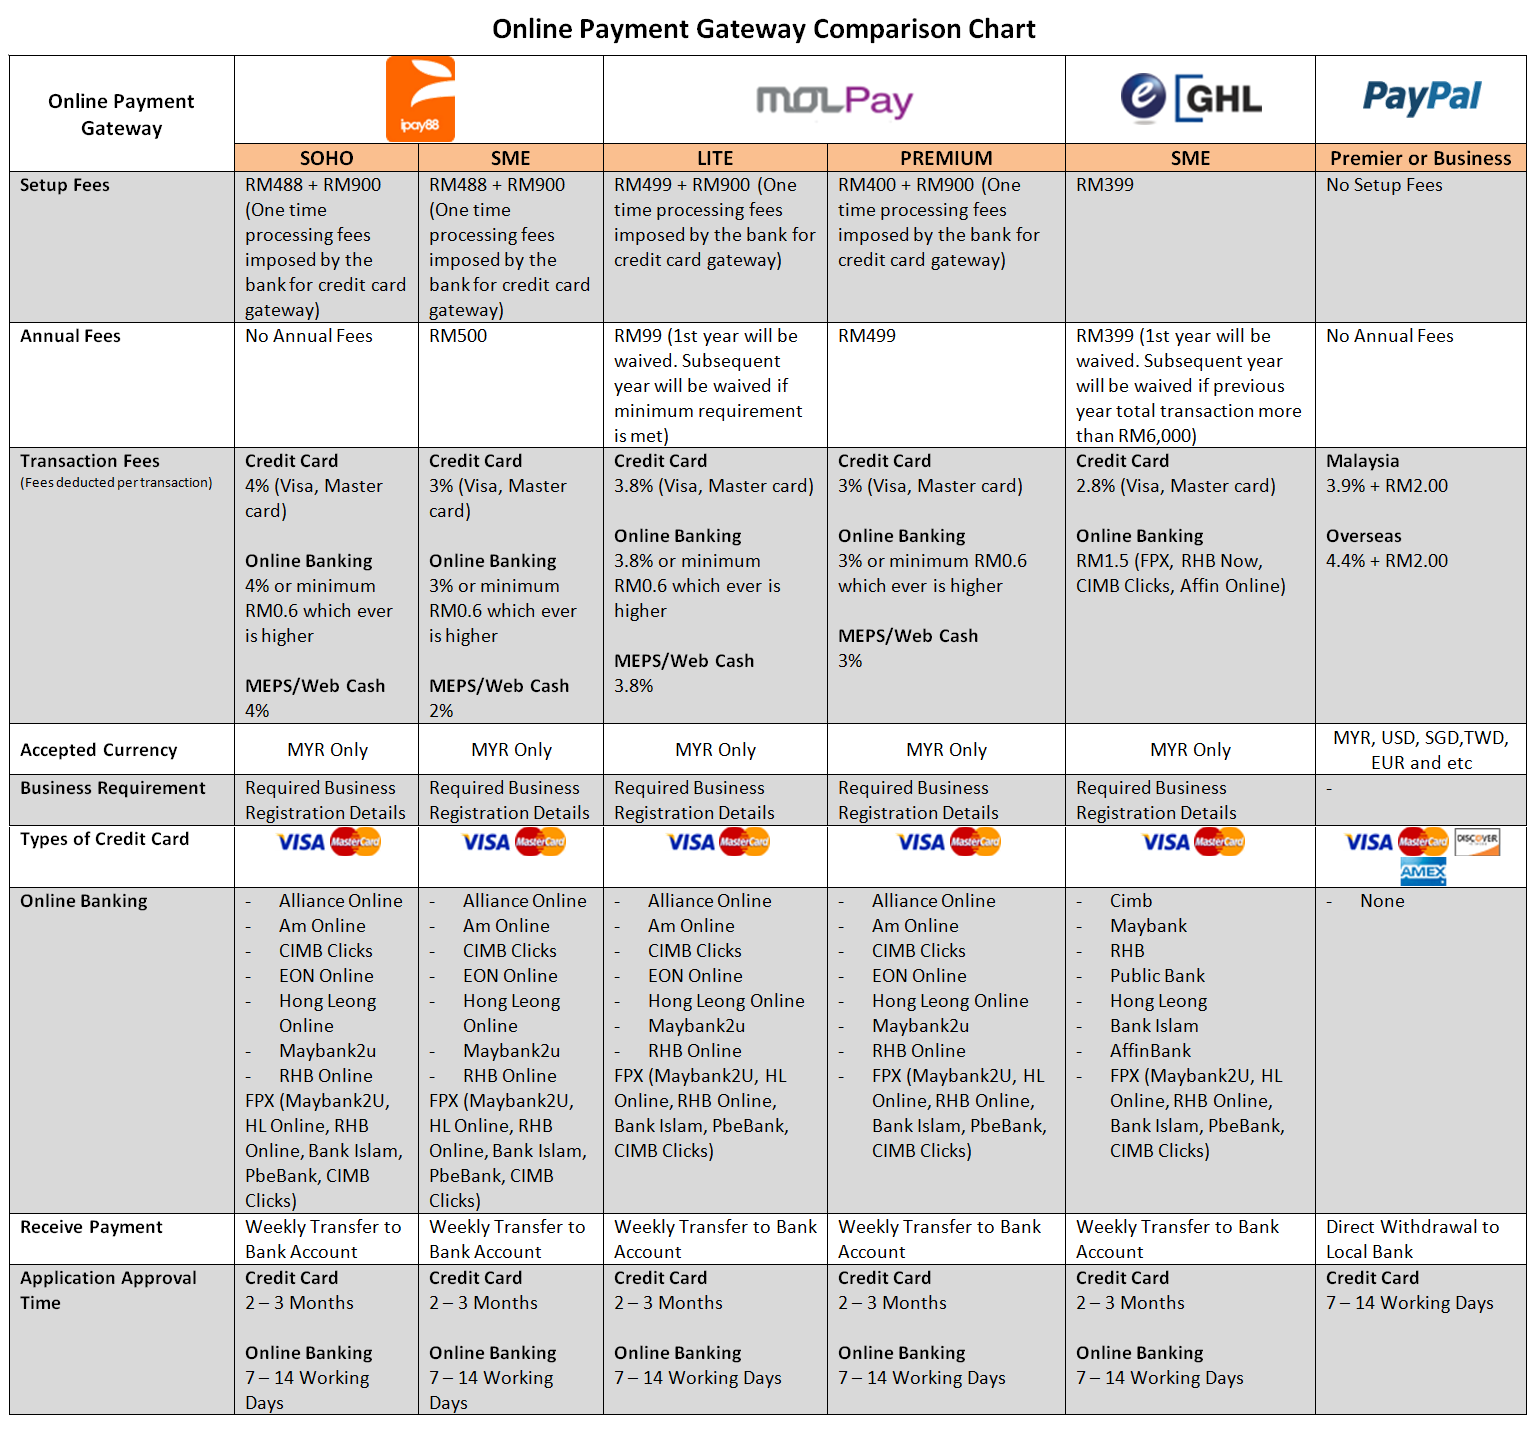 Online Bank Comparison Chart